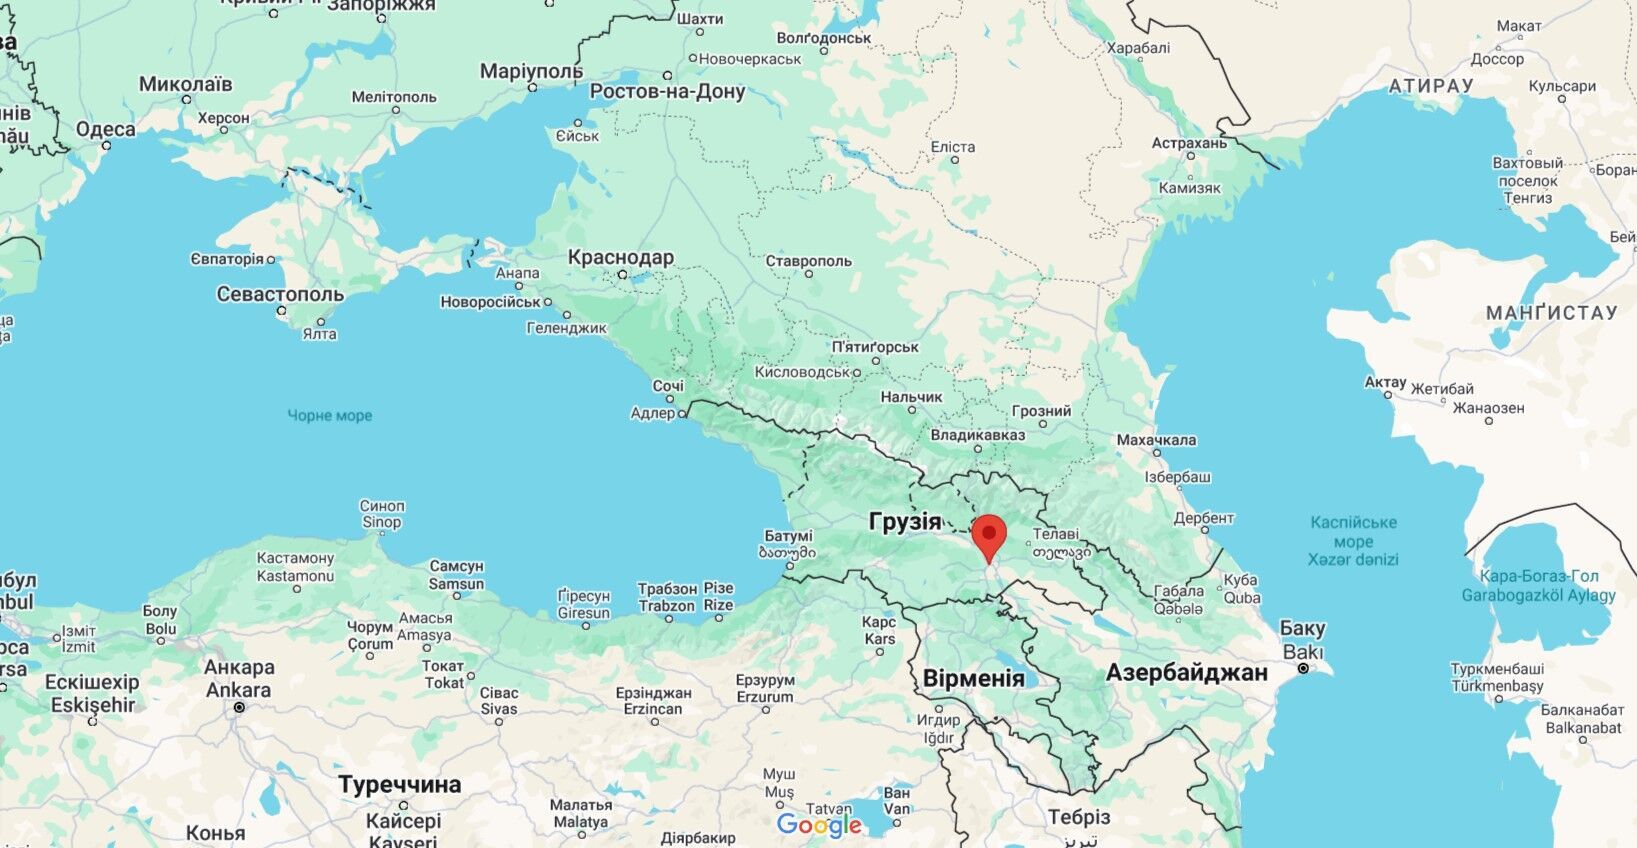 В Тбилиси произошел взрыв в тире: два человека погибли, есть пострадавшие